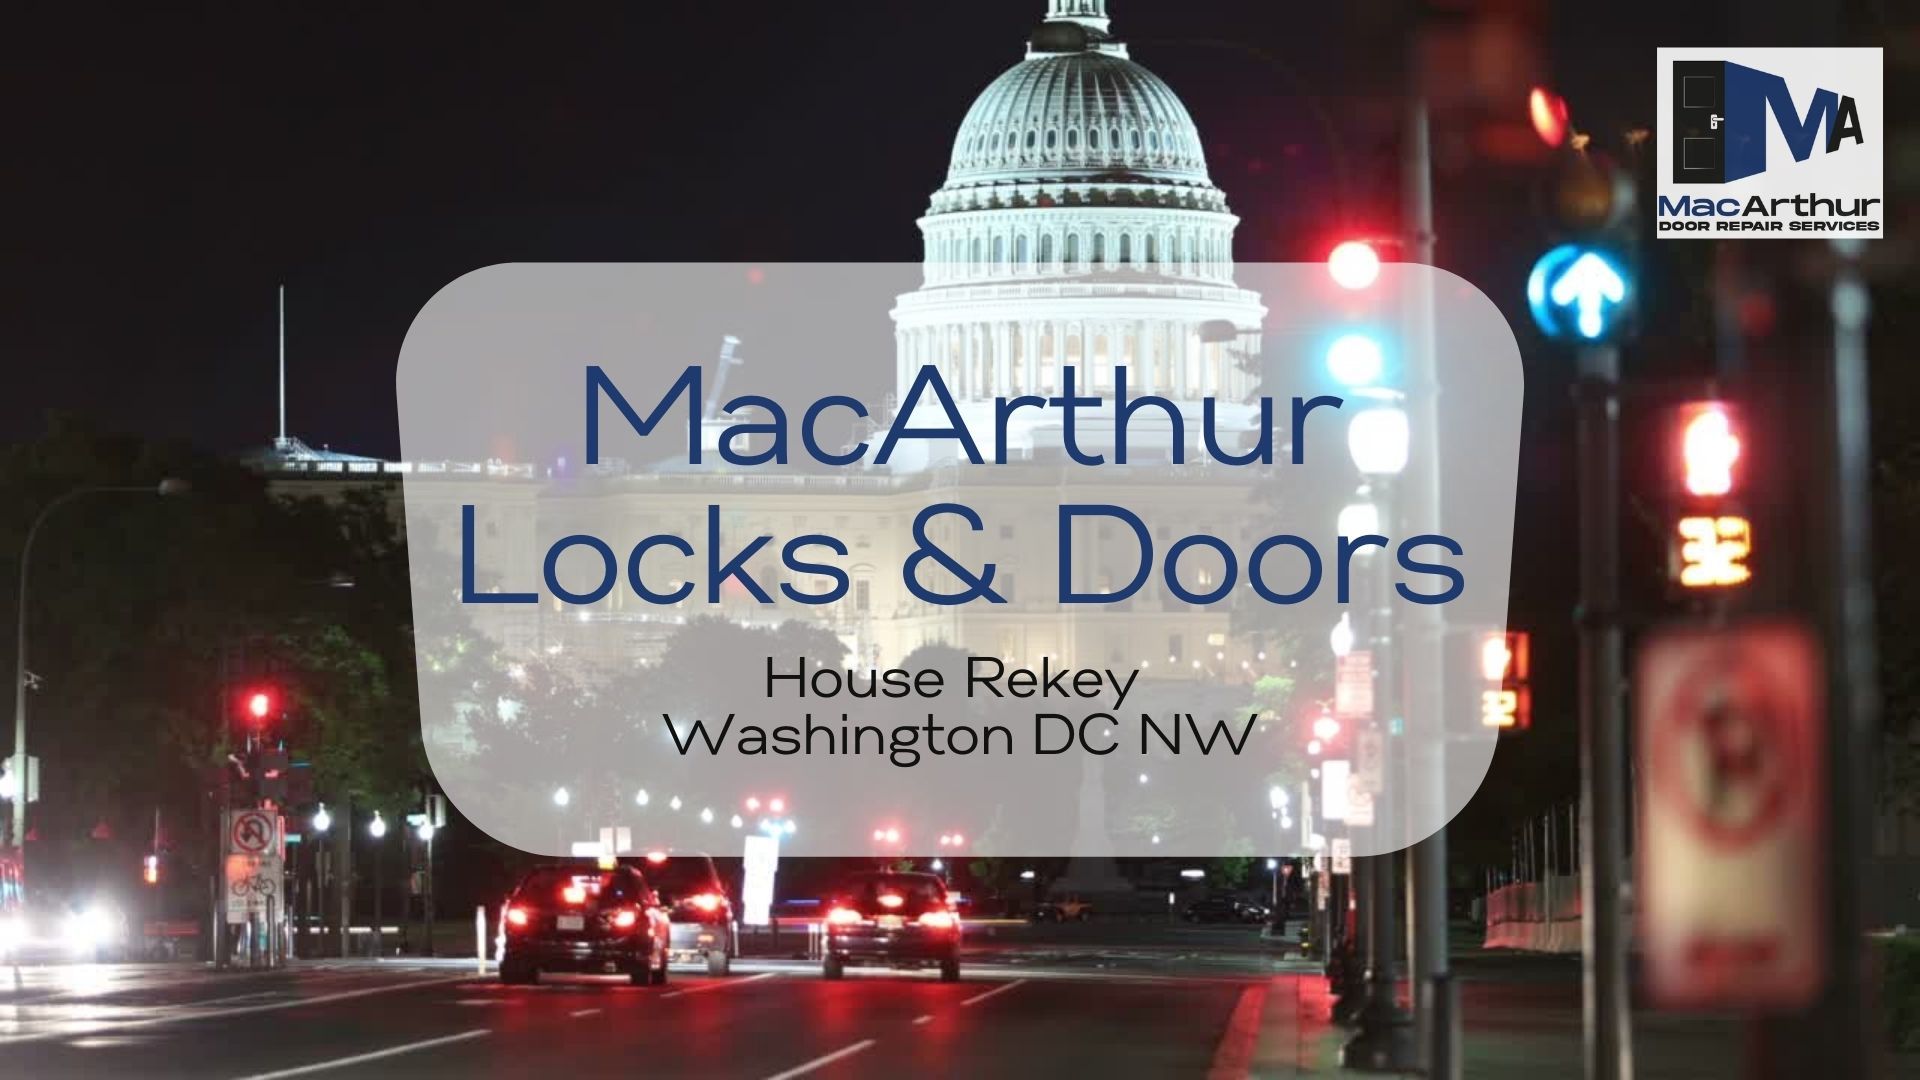 Locksmith Commercial - Mac Arthur Locks & Doors